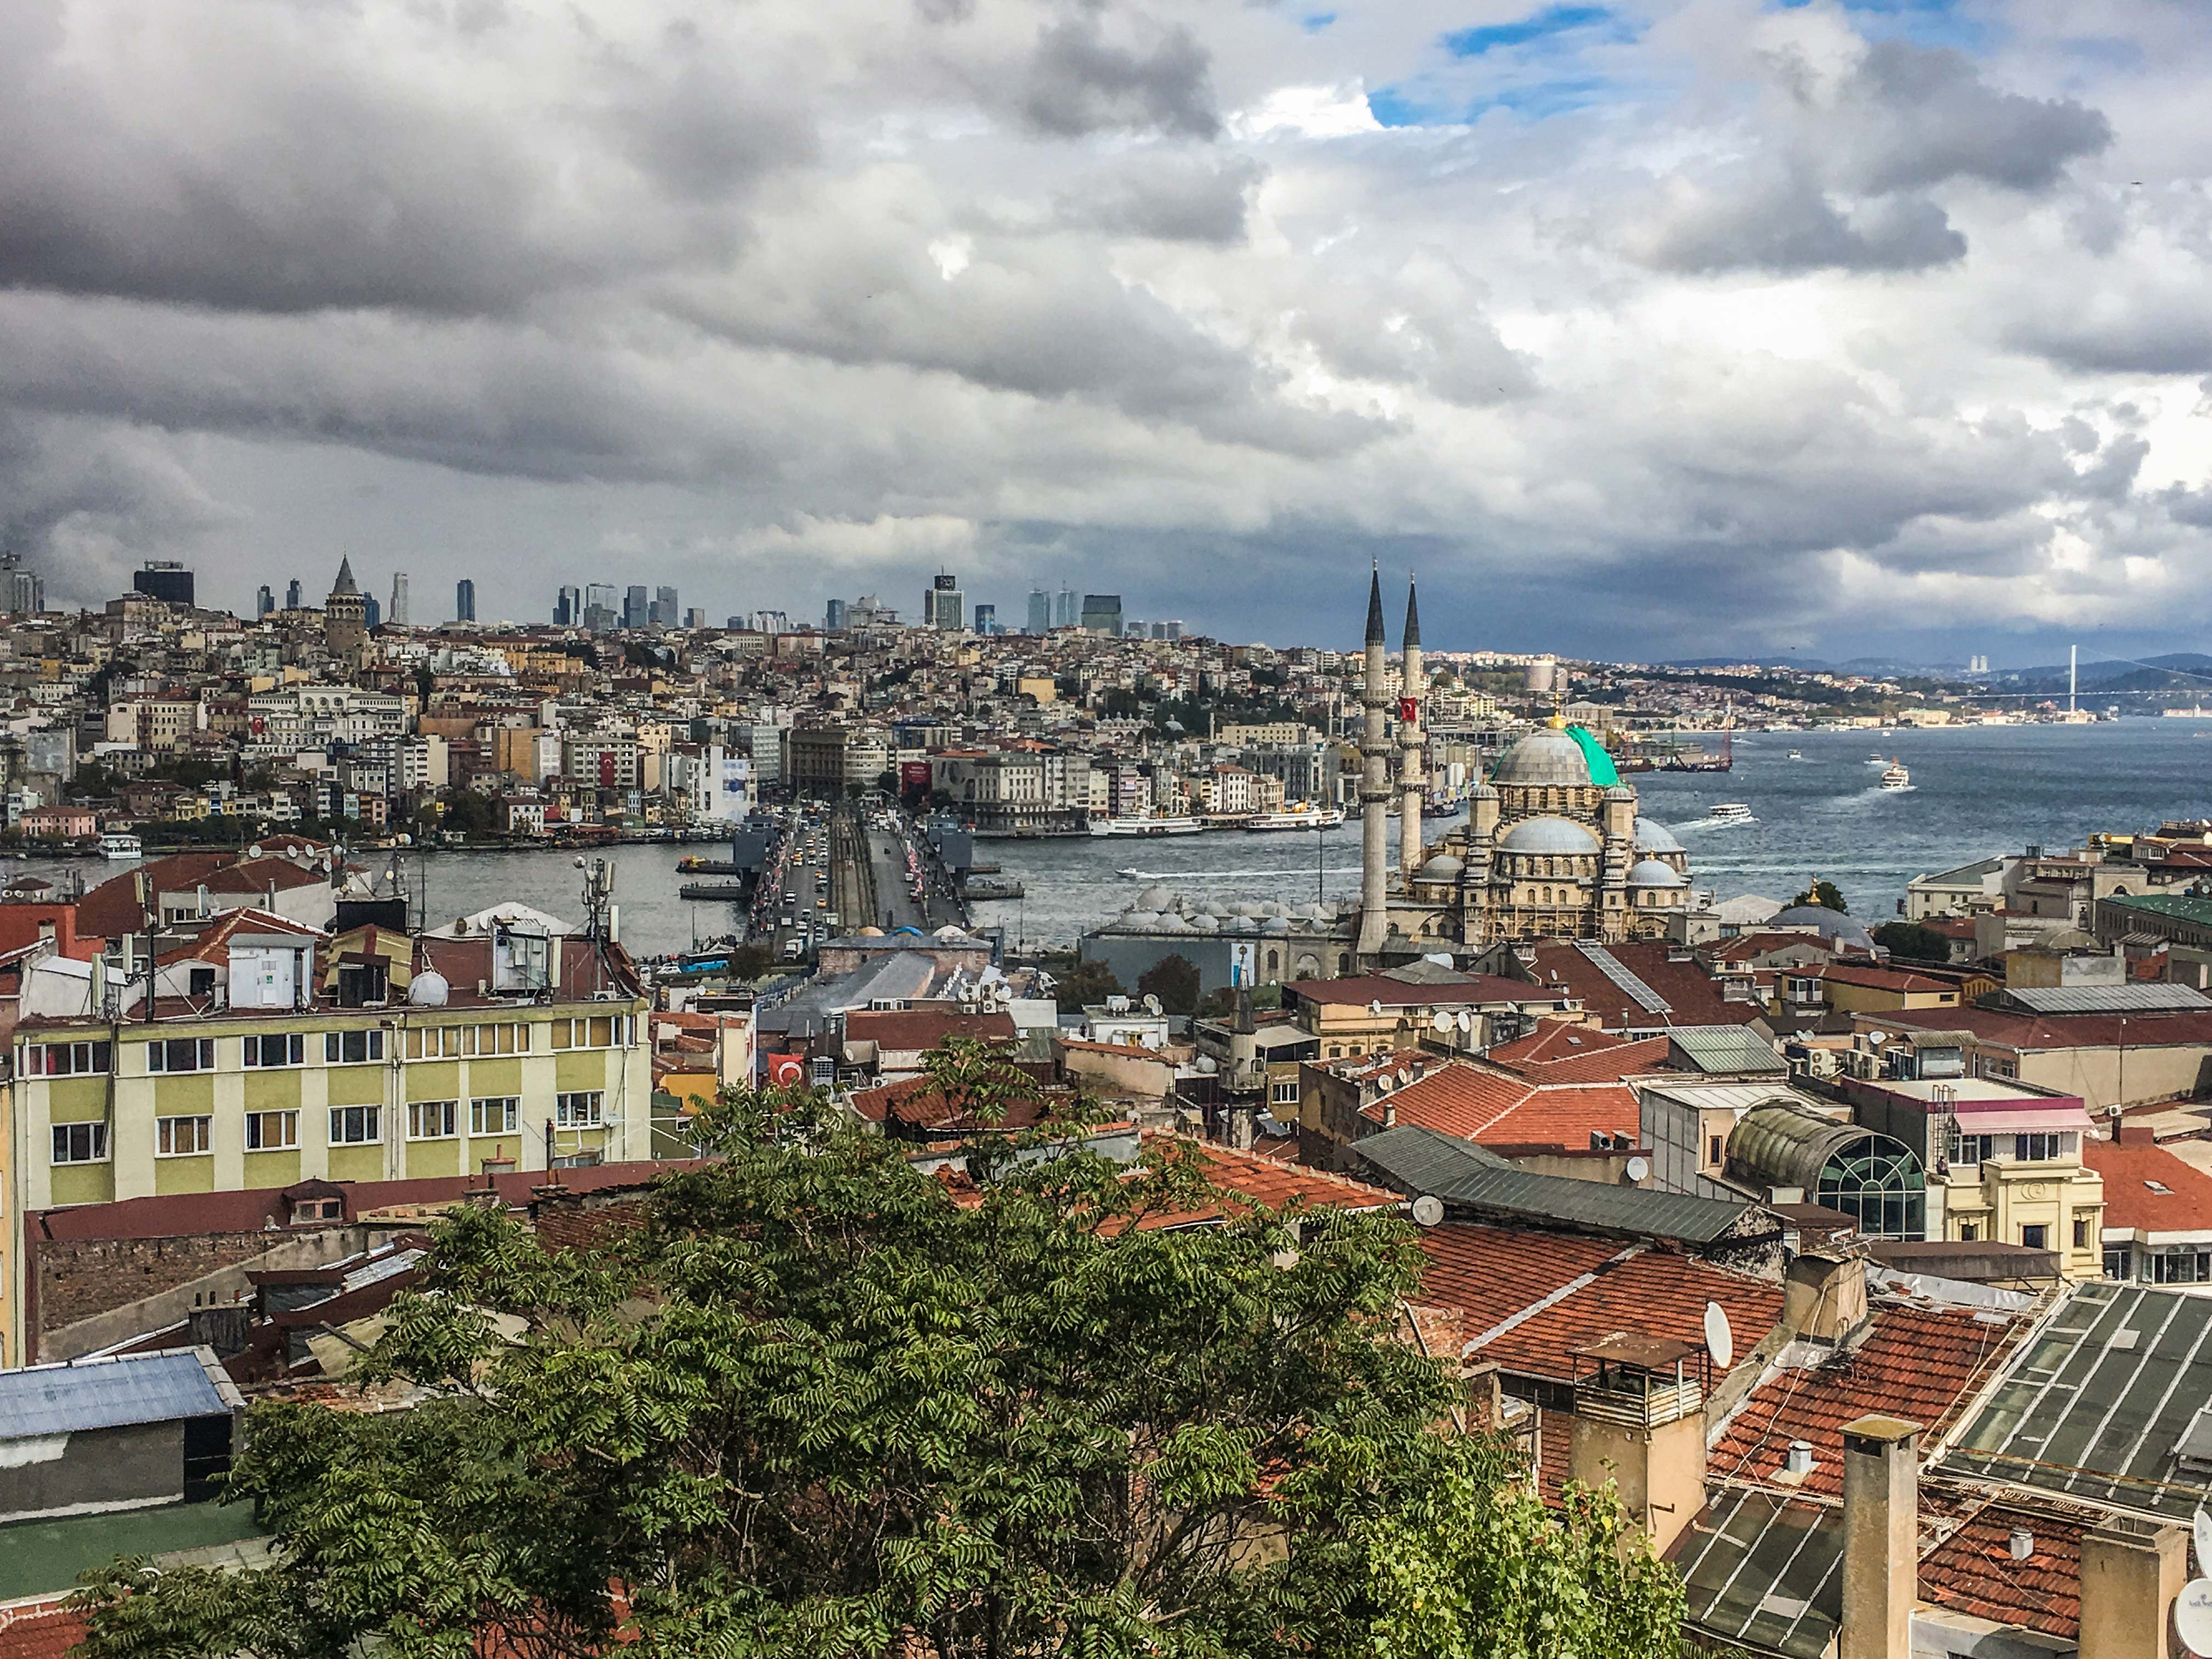 "Ich wünsche mir, dass mein letzter Blick auf die Stadt Istanbul ist." -Alphonse de Lamartine